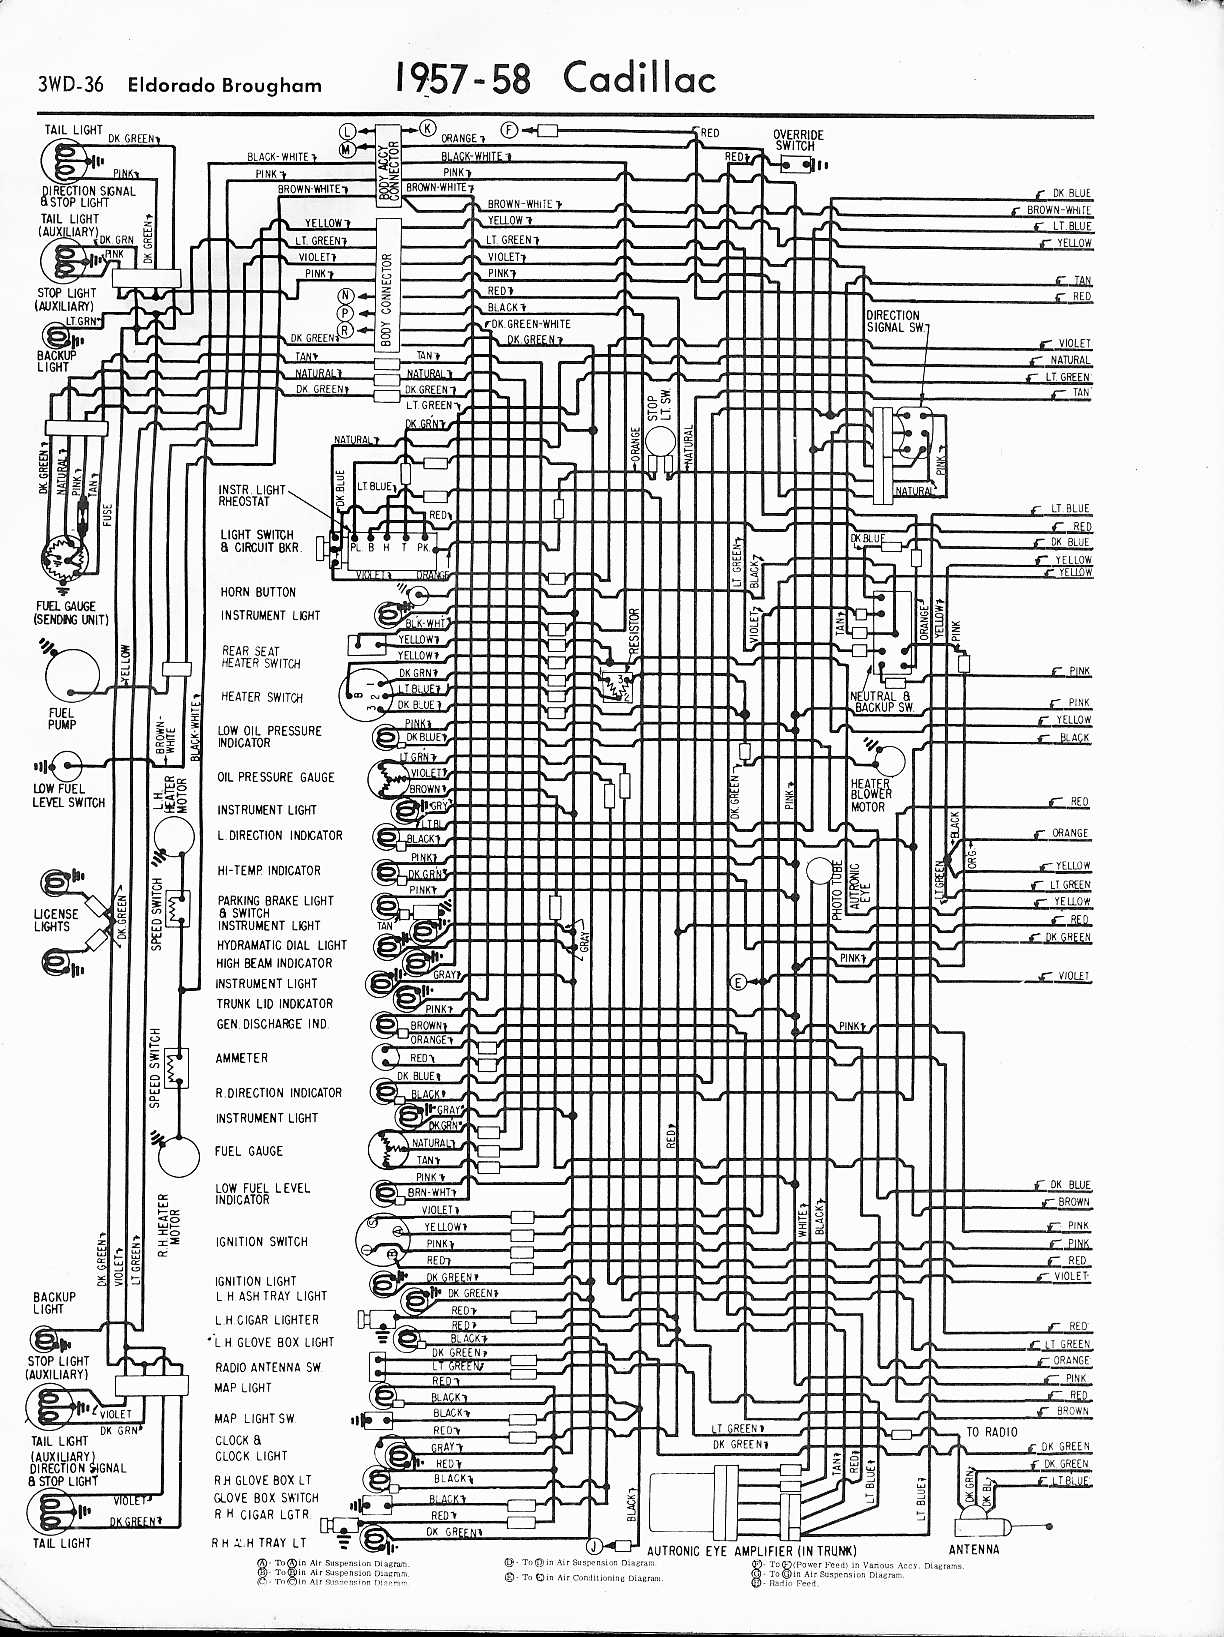 Cadillac Wiring Diagrams: 1957-1965